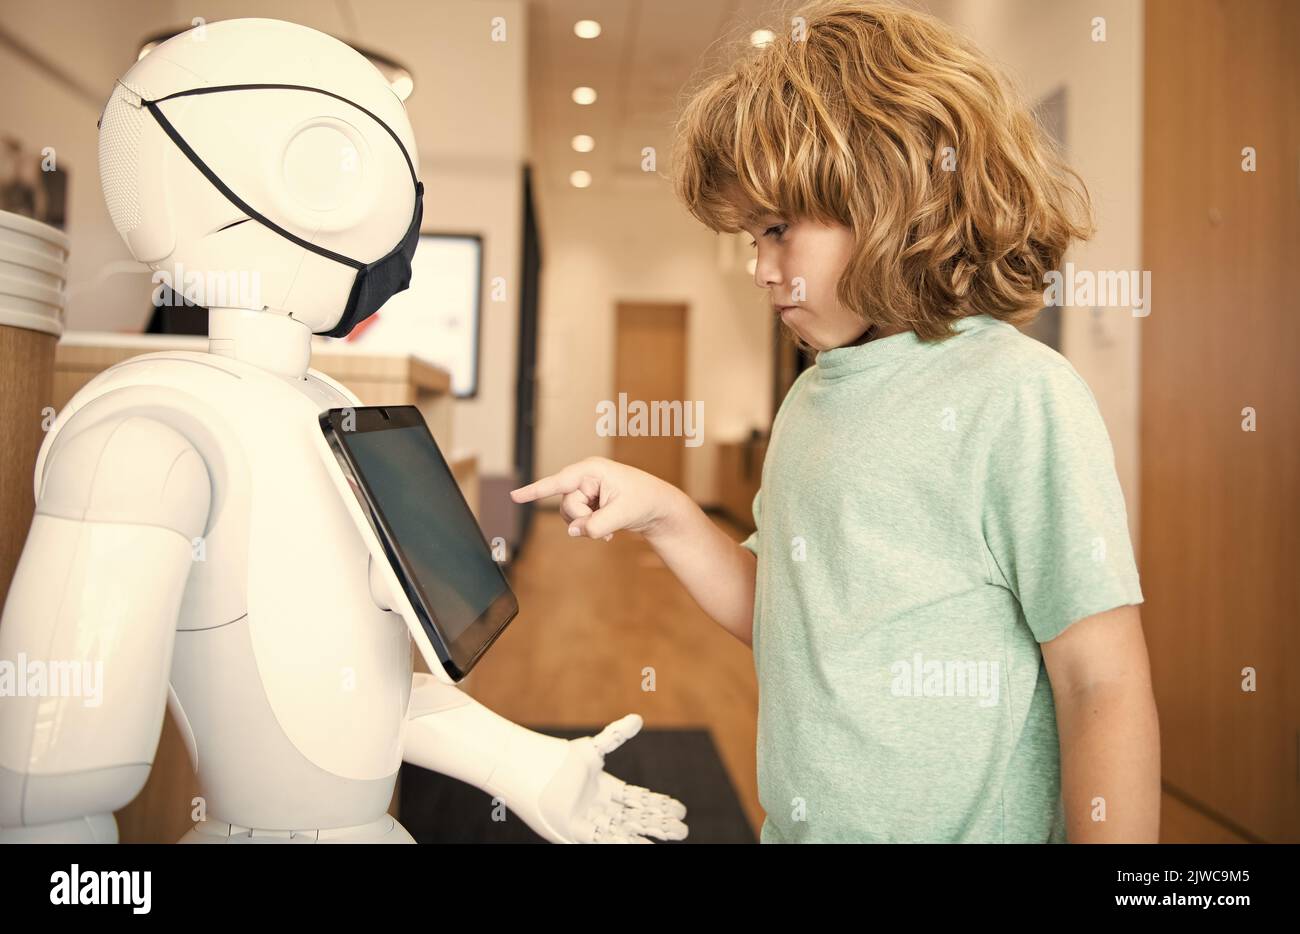 kid interagir avec le robot intelligence artificielle, communication Banque D'Images